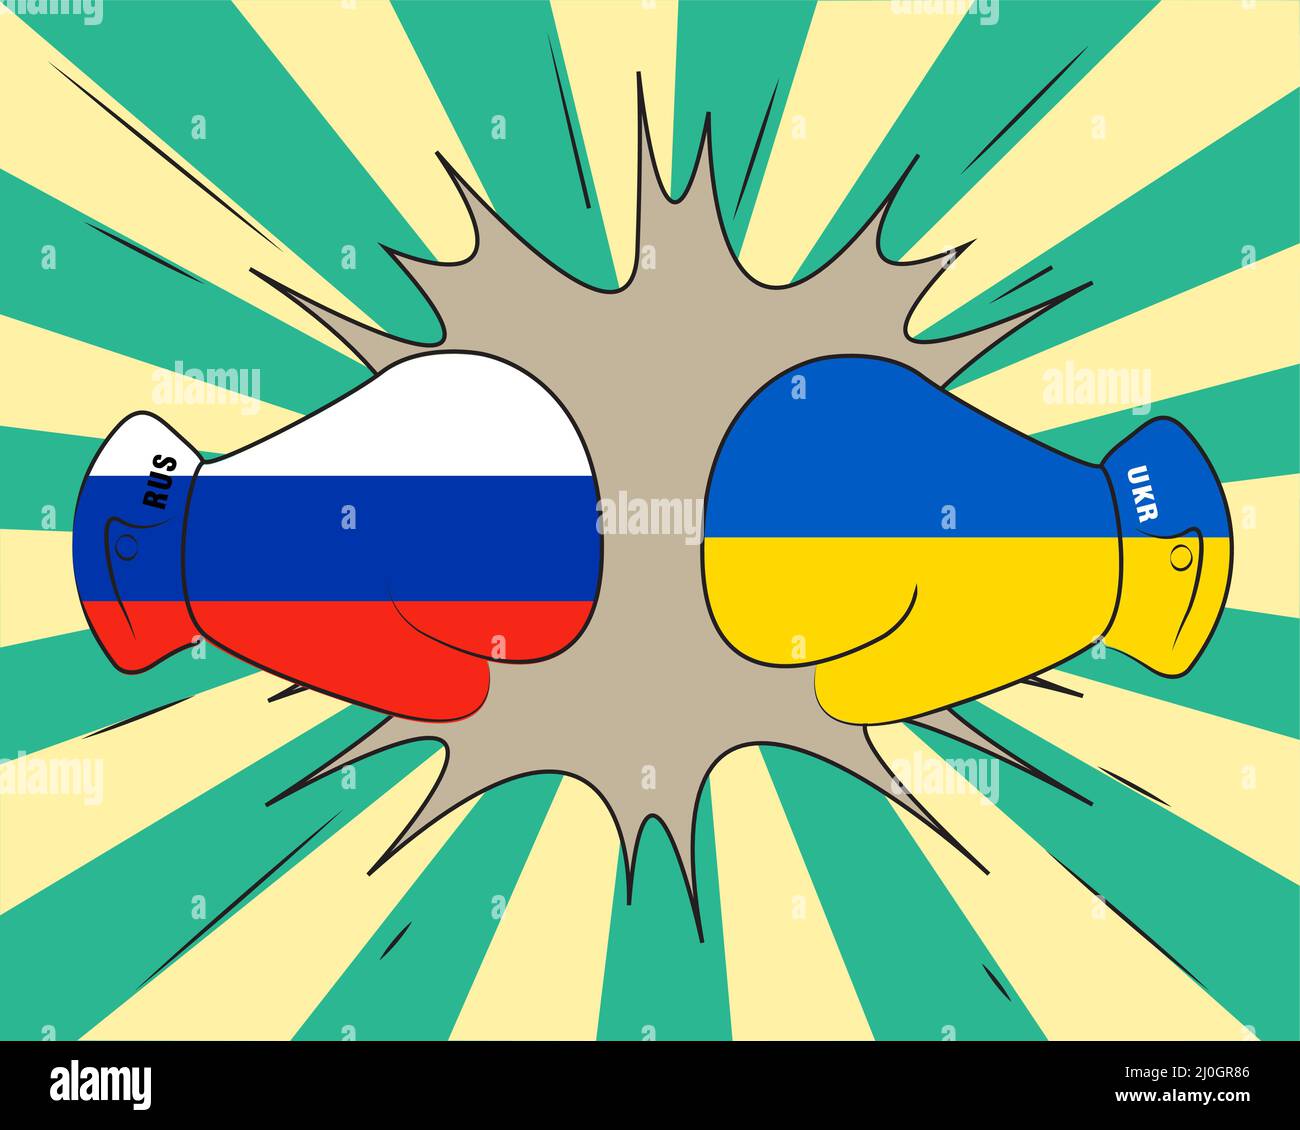 Boxing Konzept Vektor auf der Grundlage von Russland Ukraine Krieg mit russischer Flagge und Ukraine Flagge Overlay , Russland vs Ukraine Stock Vektor